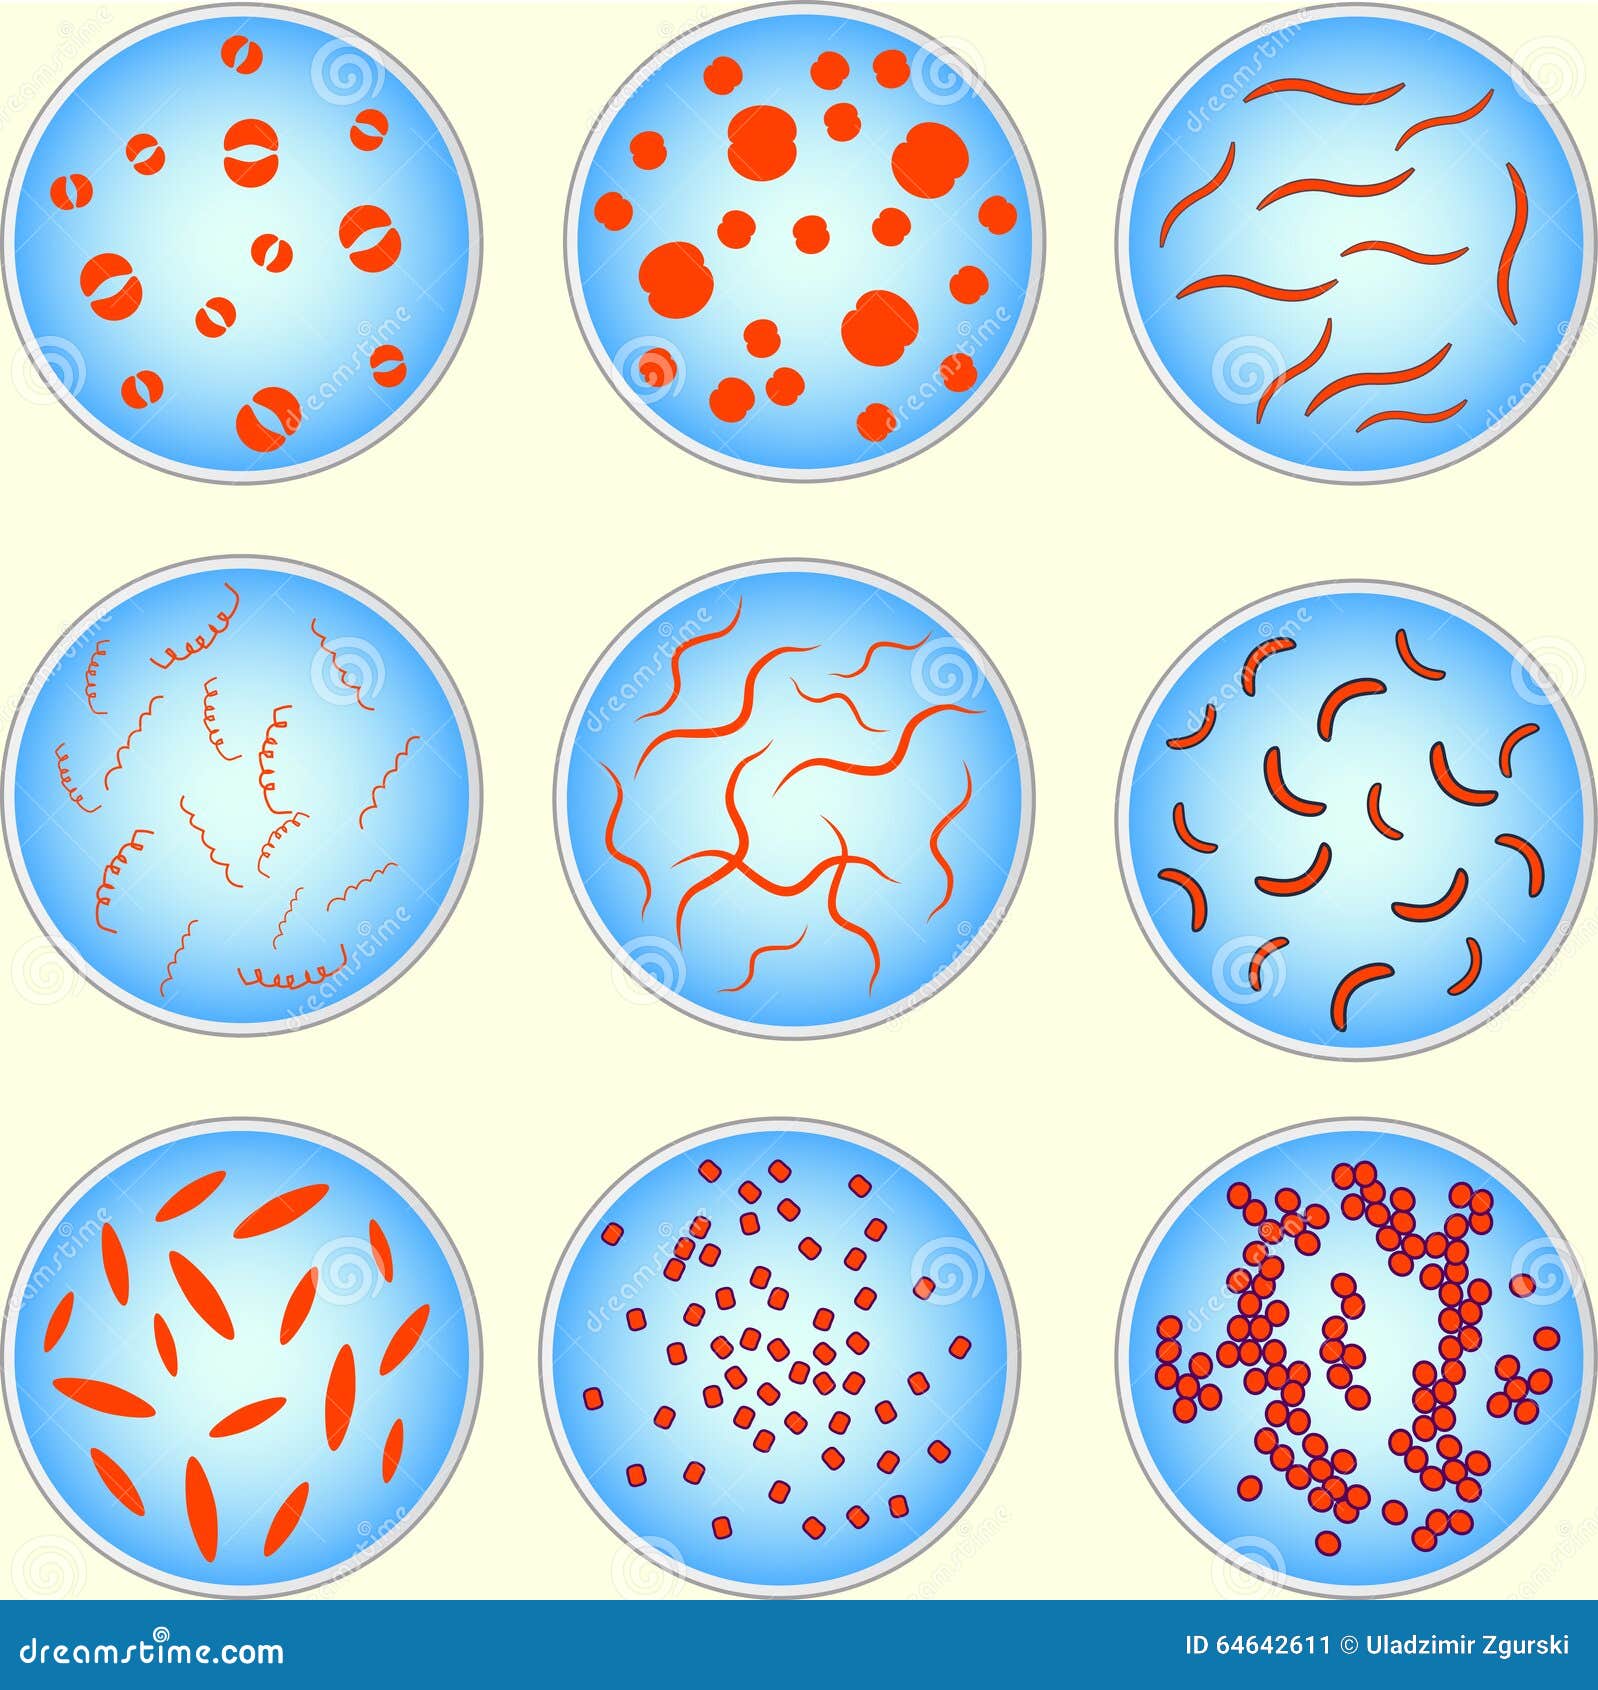 Бактерии округлой формы. Круглые бактерии. Круглые микроорганизмы. Различные формы микроорганизмов. Бактерии зарисовка.